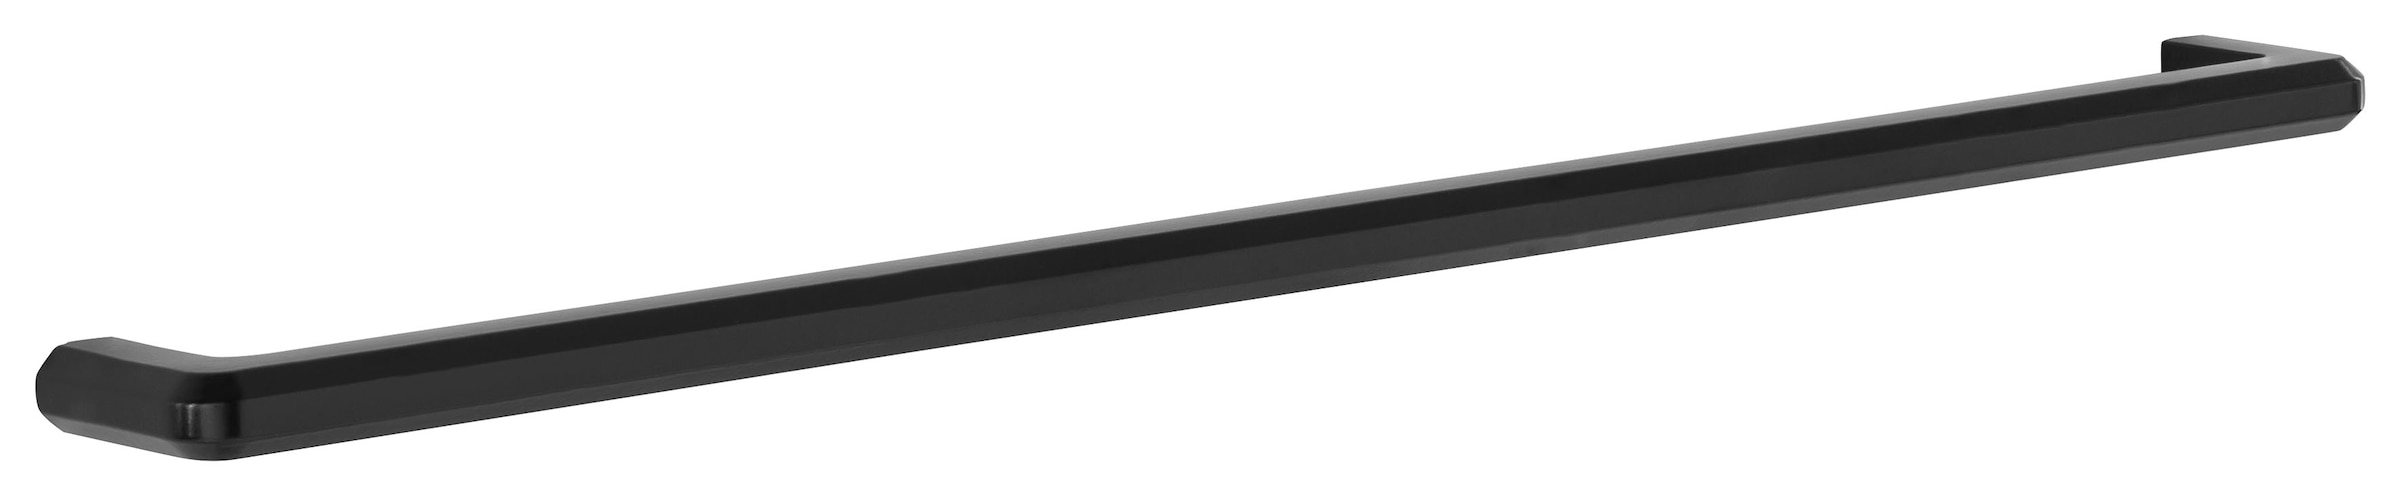 HELD MÖBEL Klapphängeschrank »Tulsa«, 50 cm breit, mit 1 Klappe, schwarzer  Metallgriff, MDF Front kaufen | BAUR